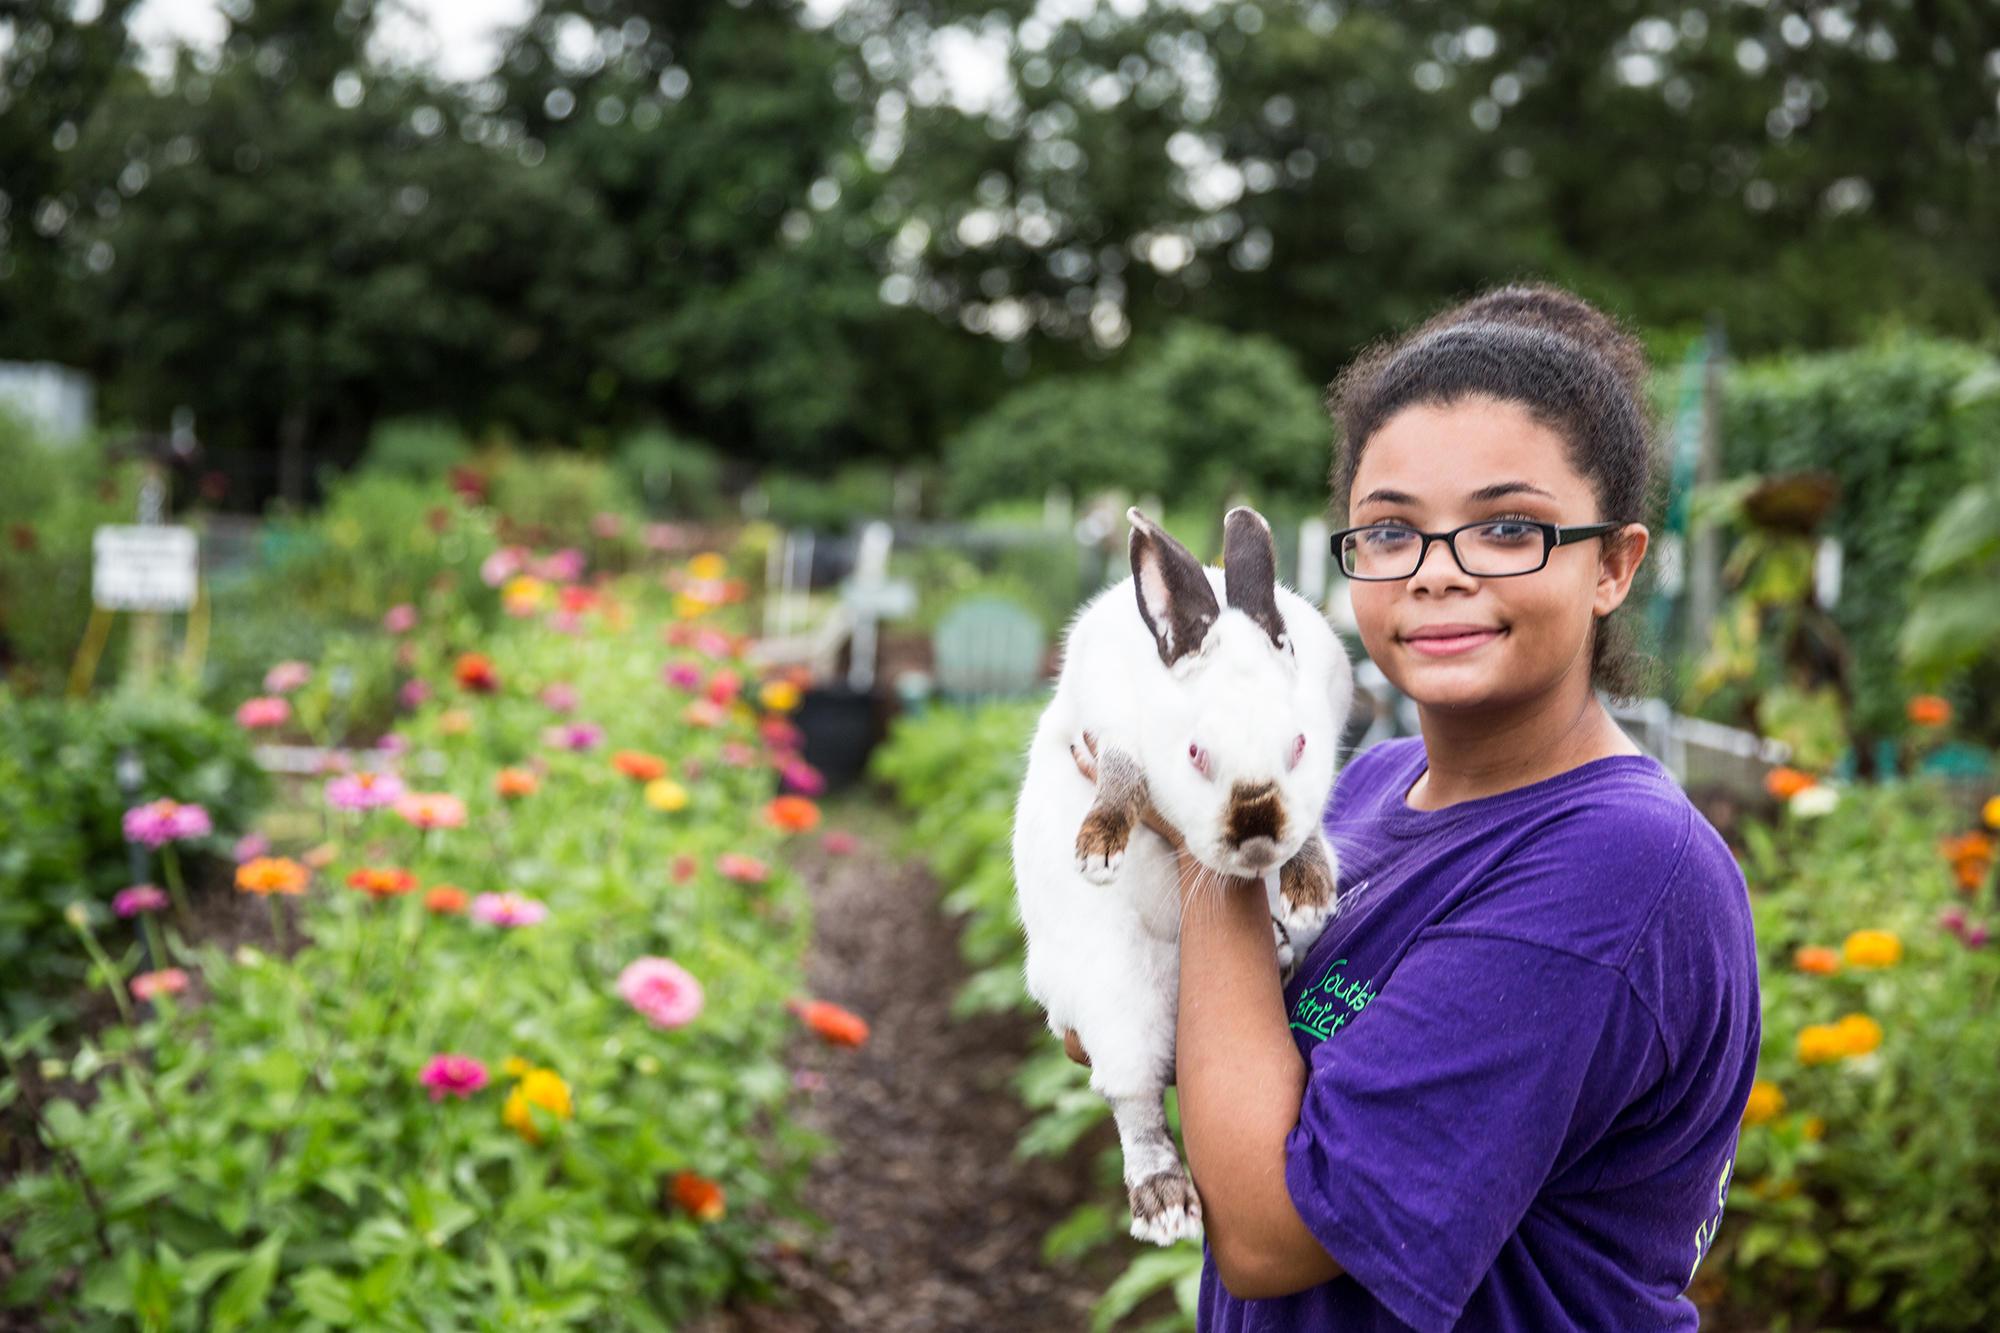 A girl holds a rabbit in a flower garden.